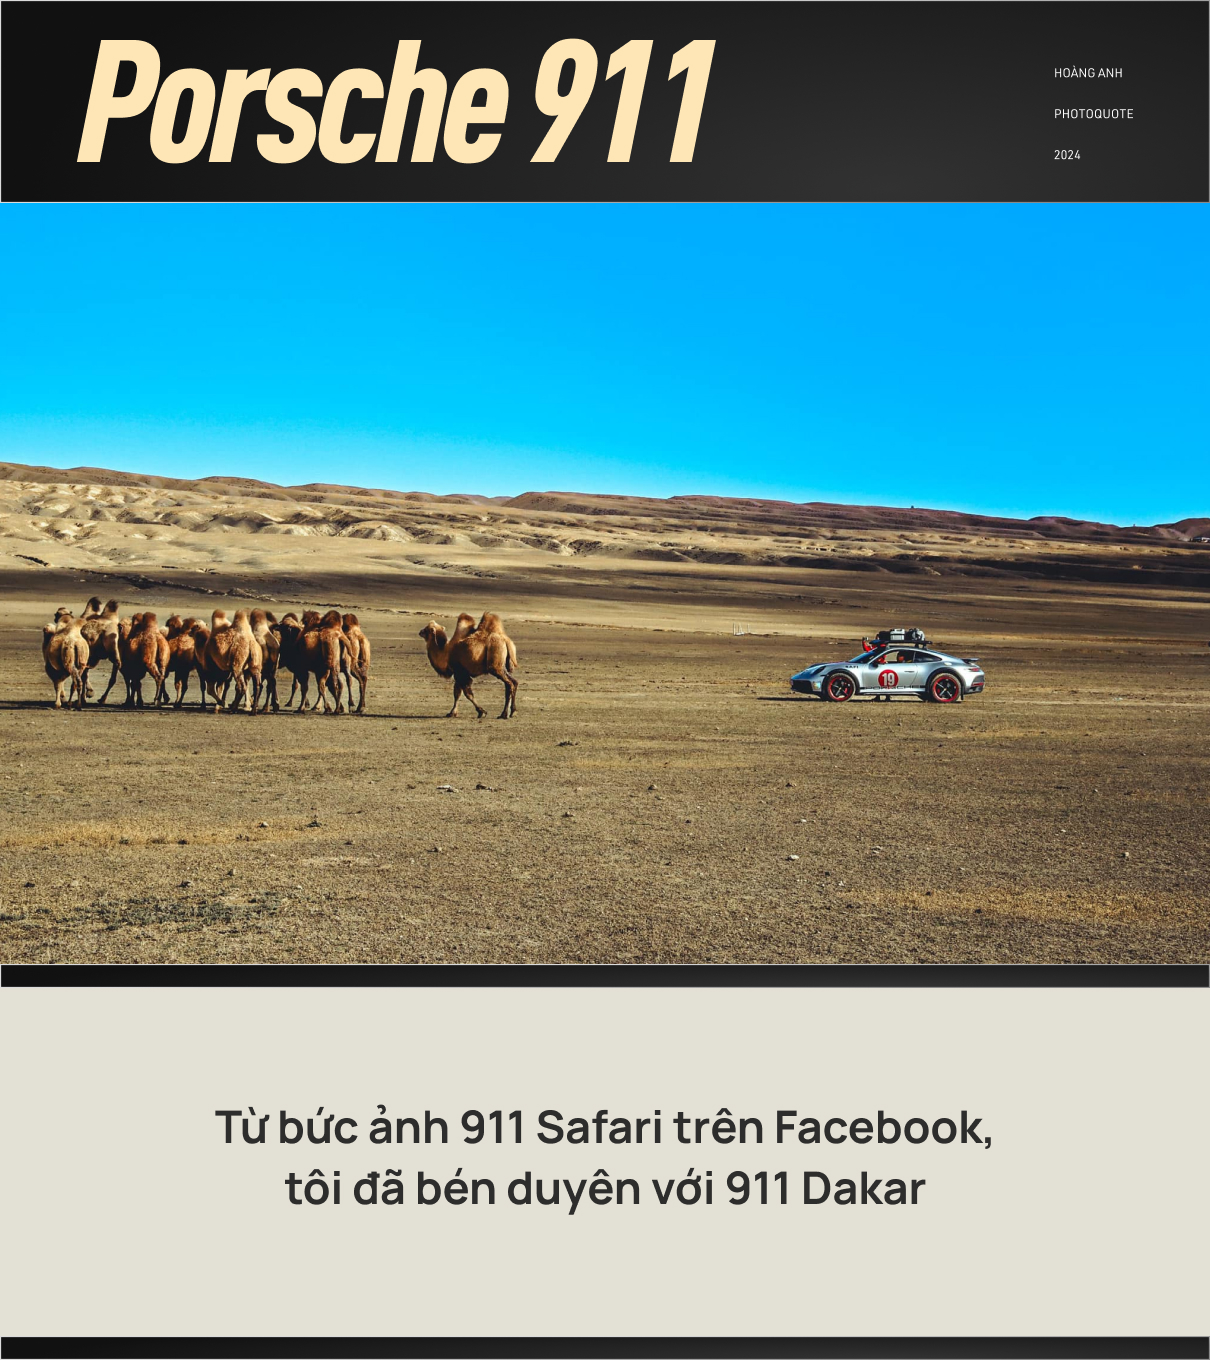 Chủ xe Porsche 911 Dakar: Từ bức ảnh trên Facebook tới quyết định mua xe và chuyến phượt hơn 33.000km từ Việt Nam tới Mông Cổ - Ảnh 6.